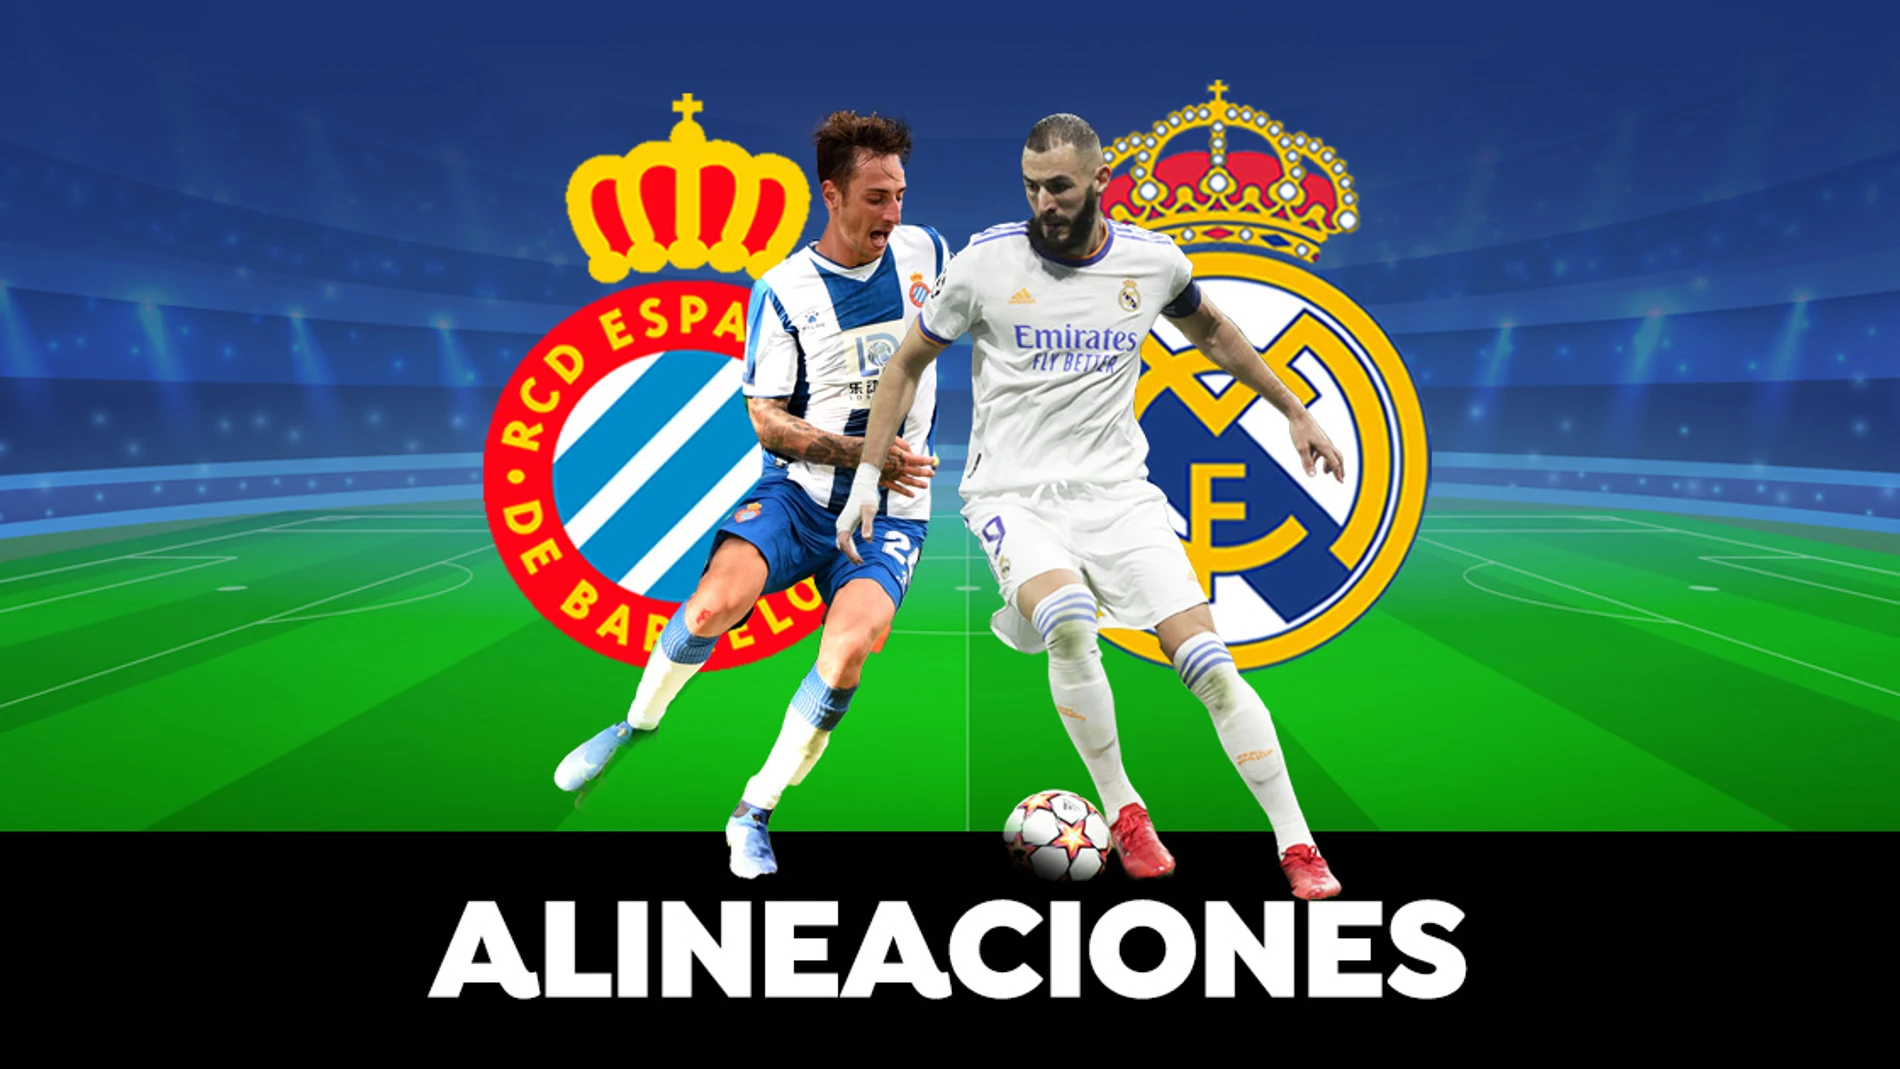 Alineación OFICIAL del Real Madrid en el partido de hoy el Espanyol en La Liga